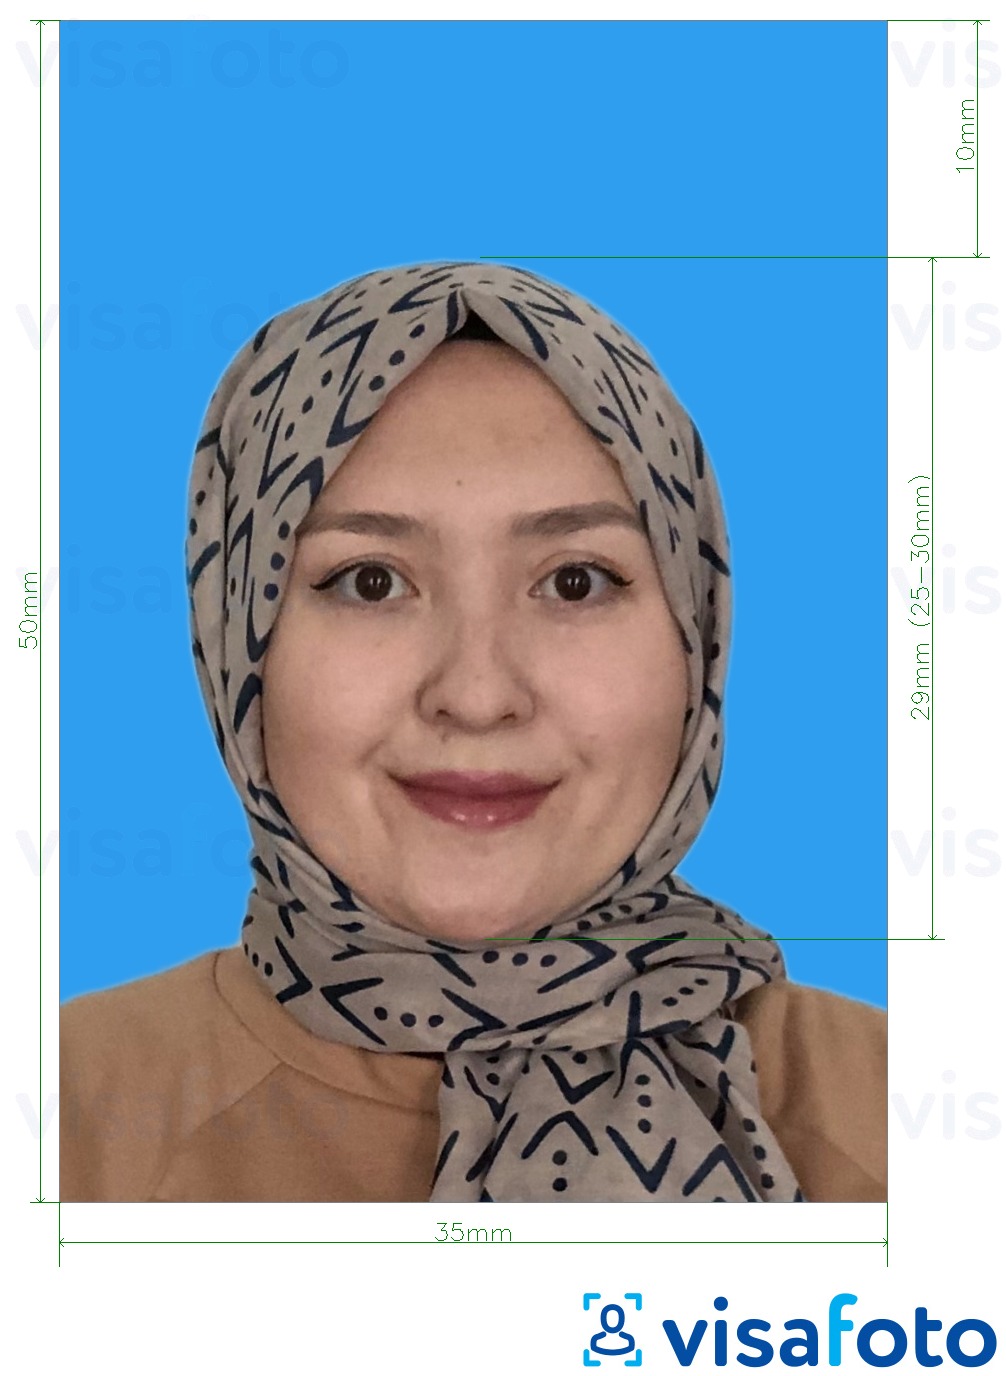 Exemplo de foto para Passaporte da Malásia 35x50 mm background azul com especificação exata de dimensão